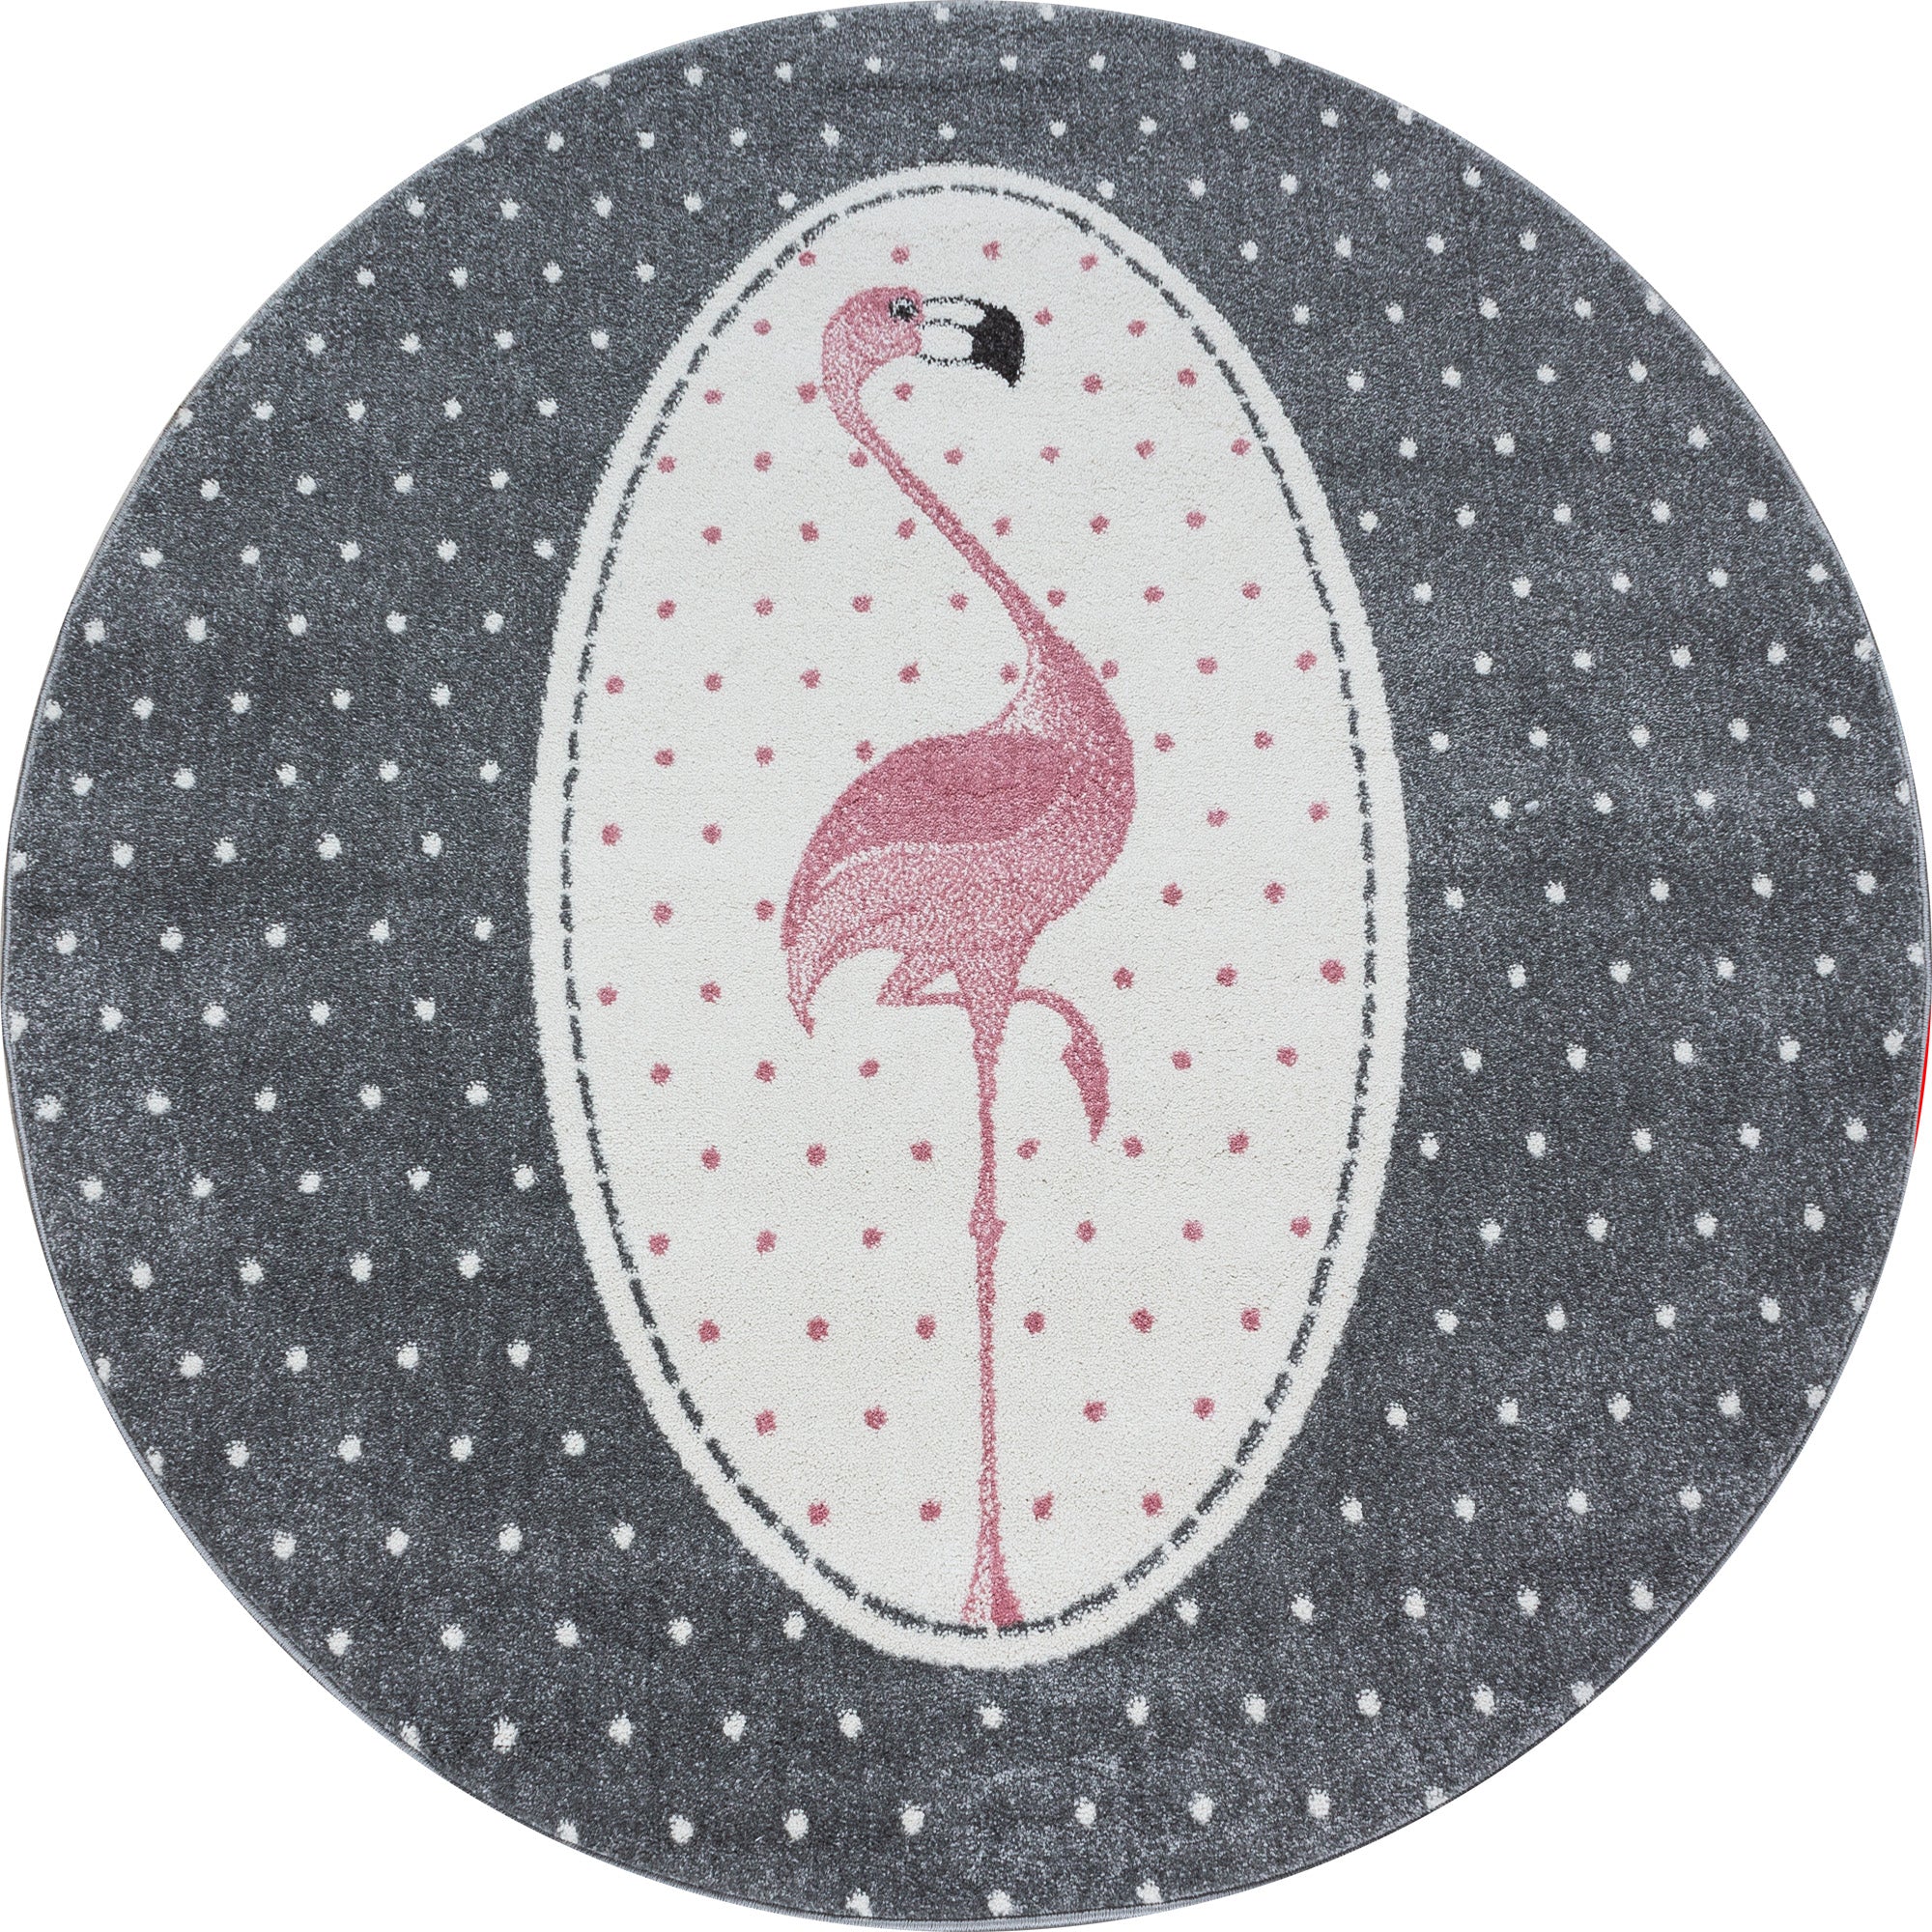 Designer Kinderteppich Kurzflor Flamingo Stern Kinderzimmerteppich Grau Pink